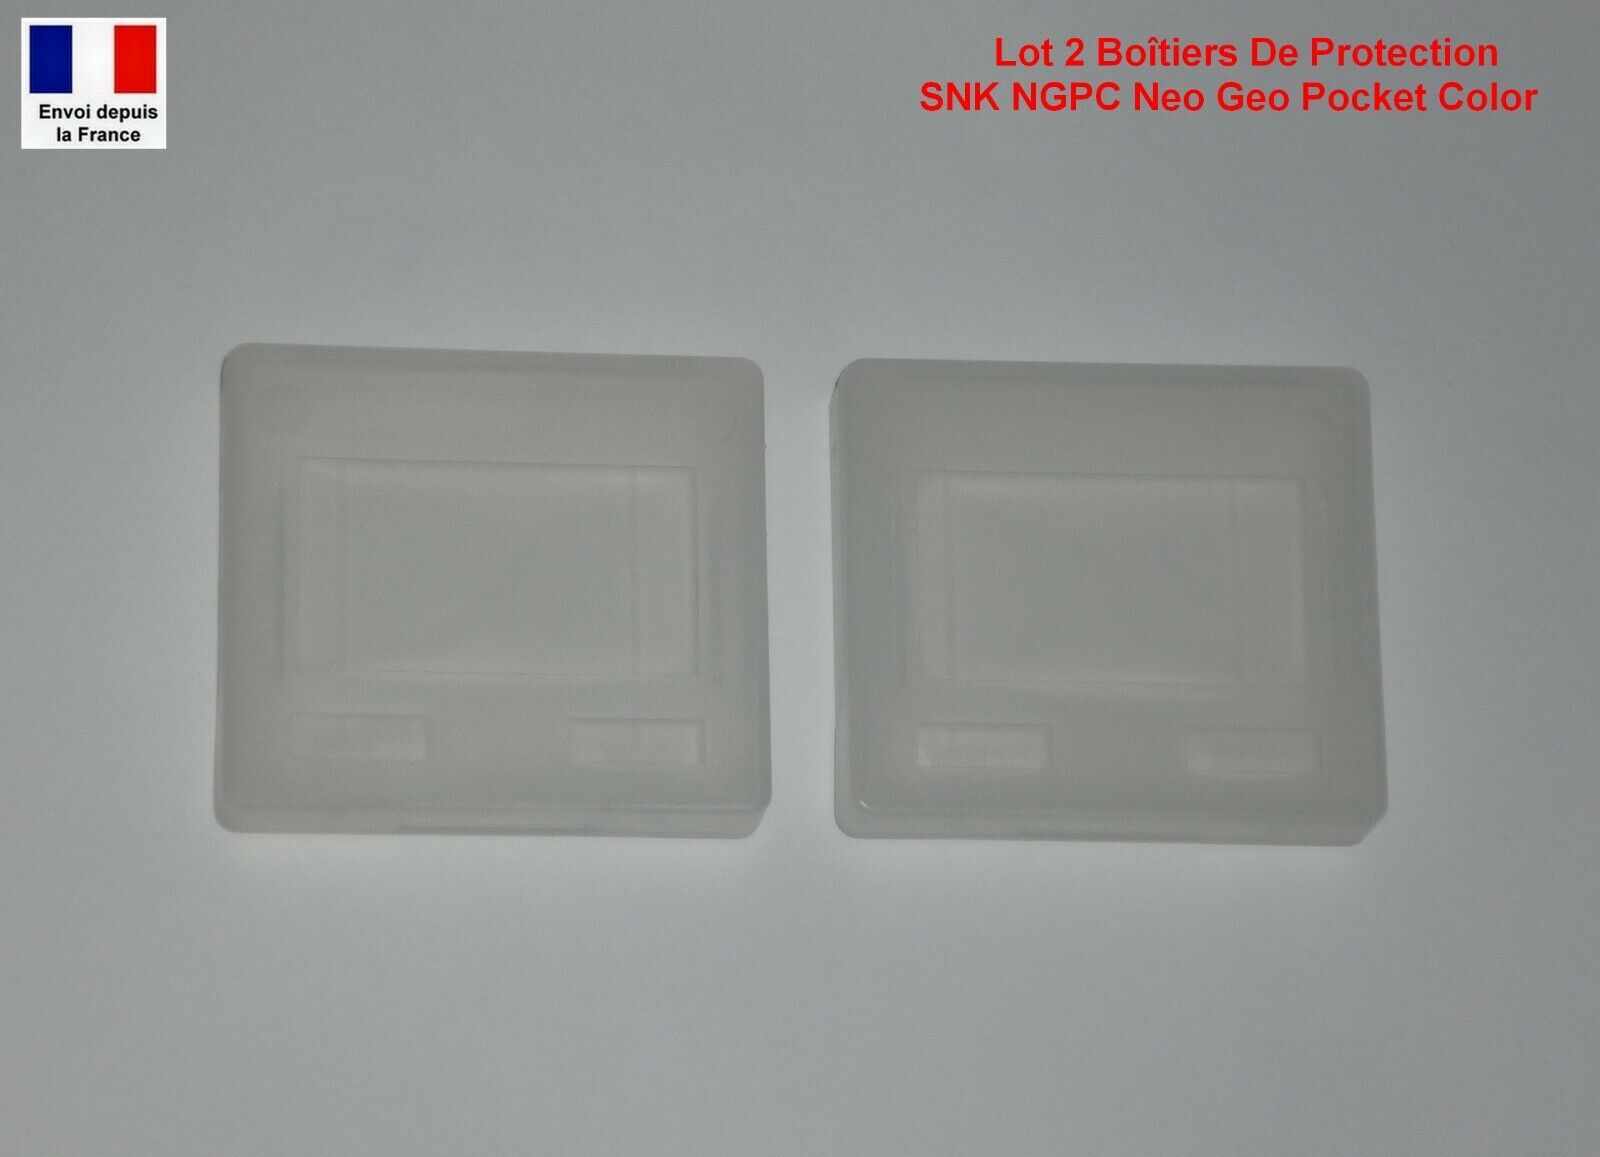 Lot 2 Boîtiers De Protection Rangement Etui Plastique NGPC Neo Geo Pocket Color